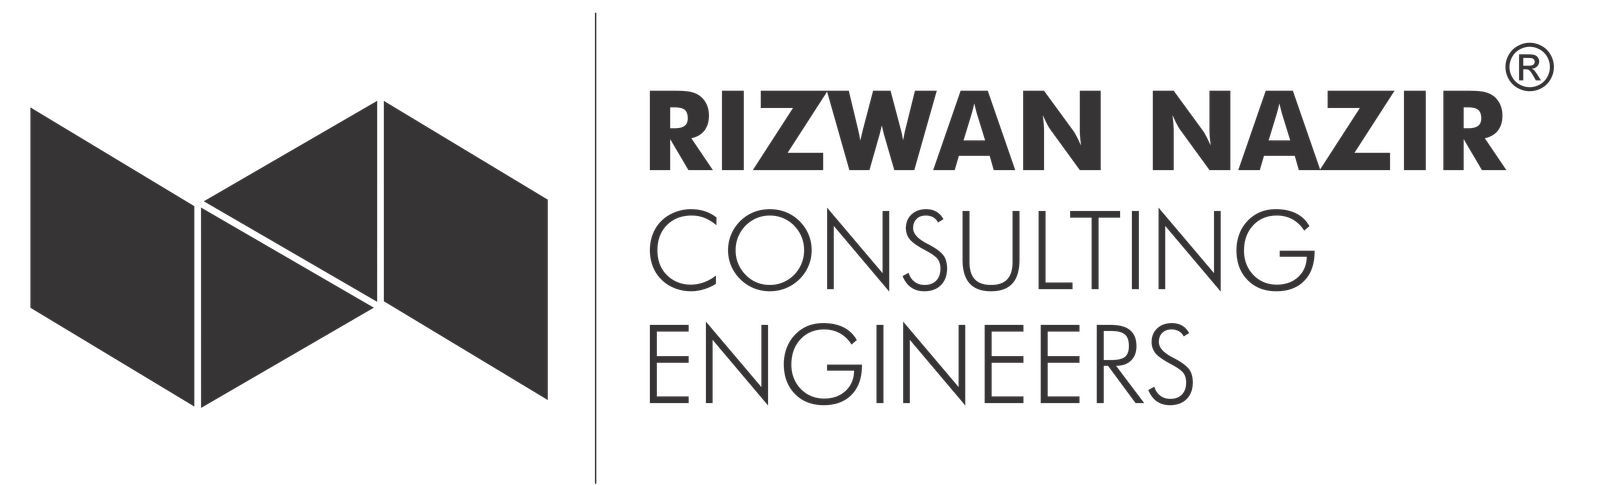 Rizwan Nazir Consulting Engineers